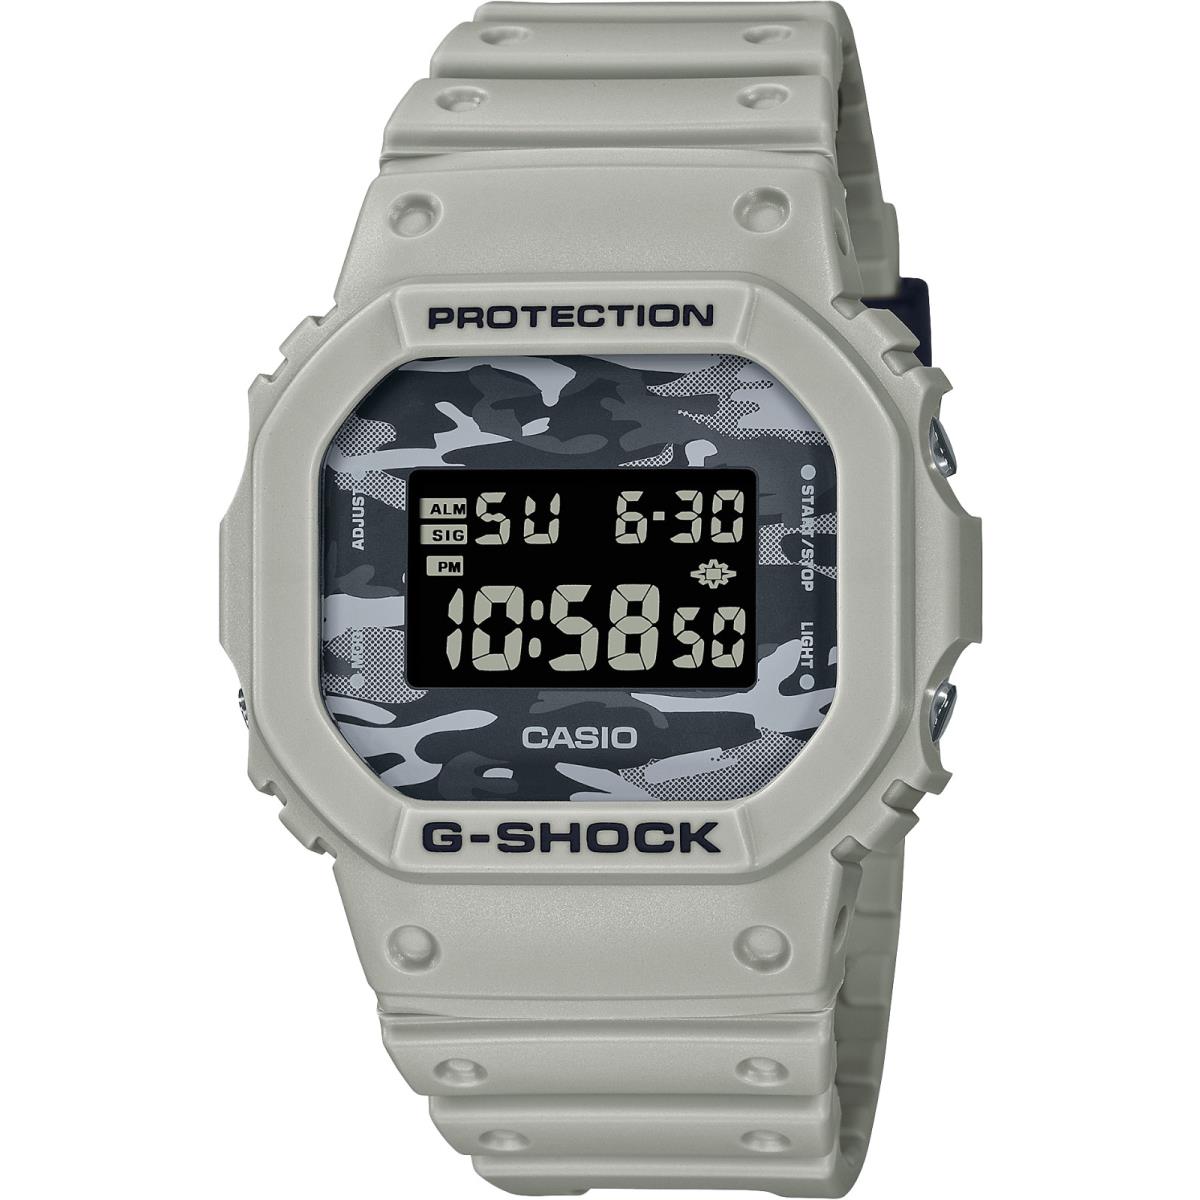 Casio G-shock DW5600CA-8 Camouflage Grey / Beige Limited Watch